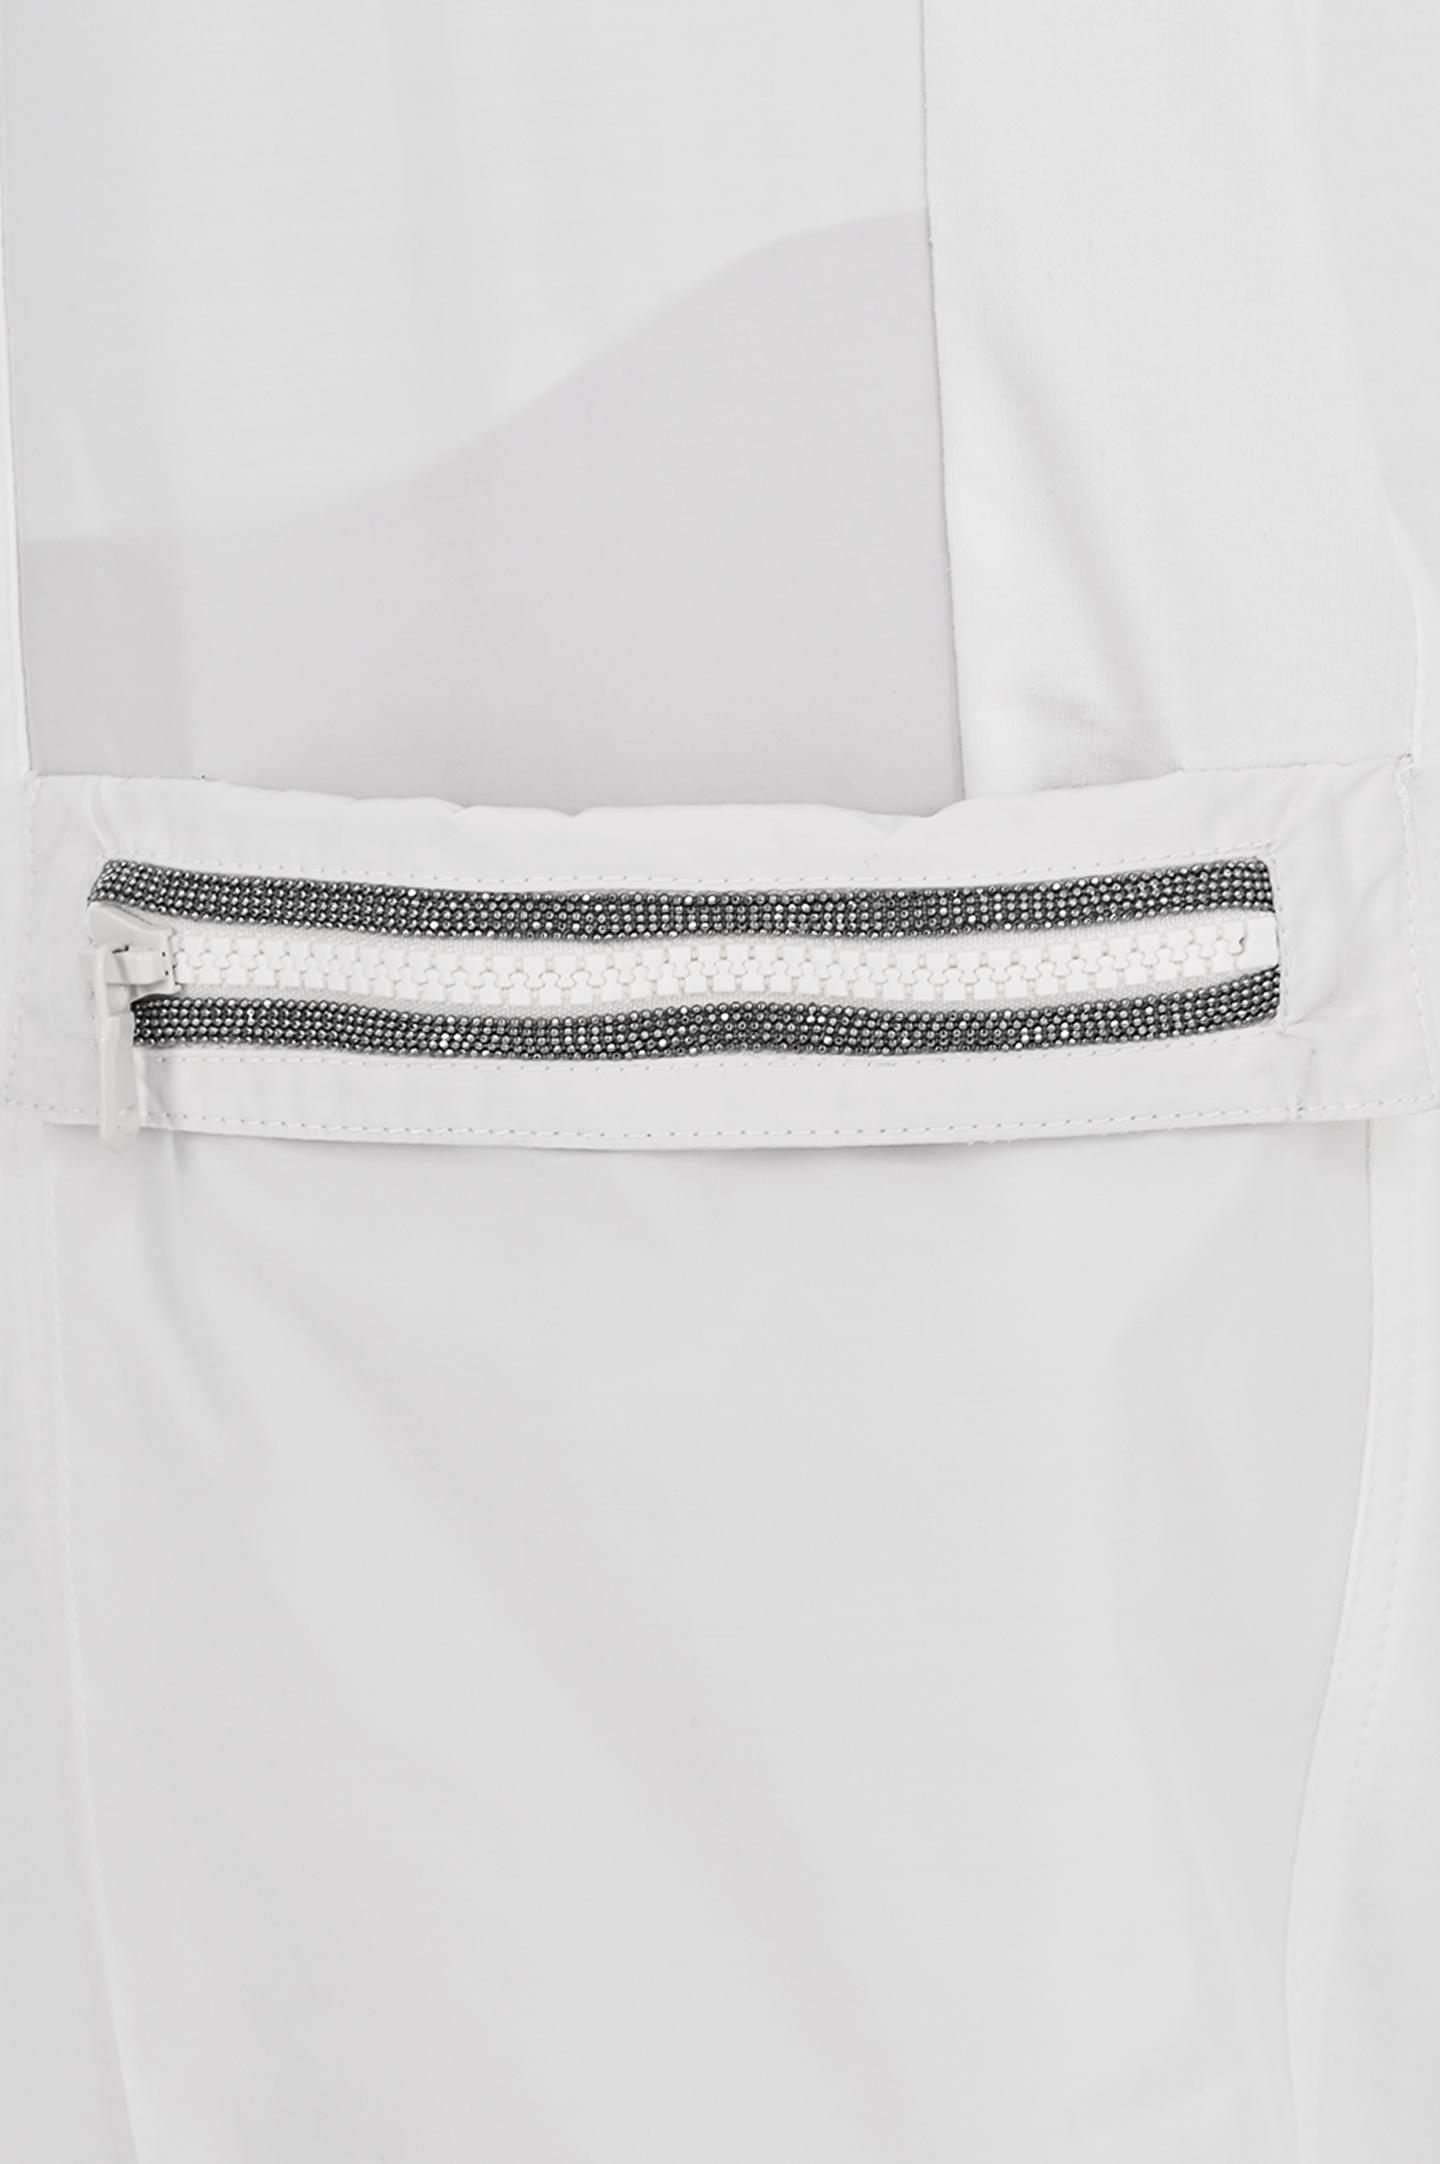 Хлопковые брюки карго с эластаном  BRUNELLO  CUCINELLI MH827EP499, цвет: Белый, Женский